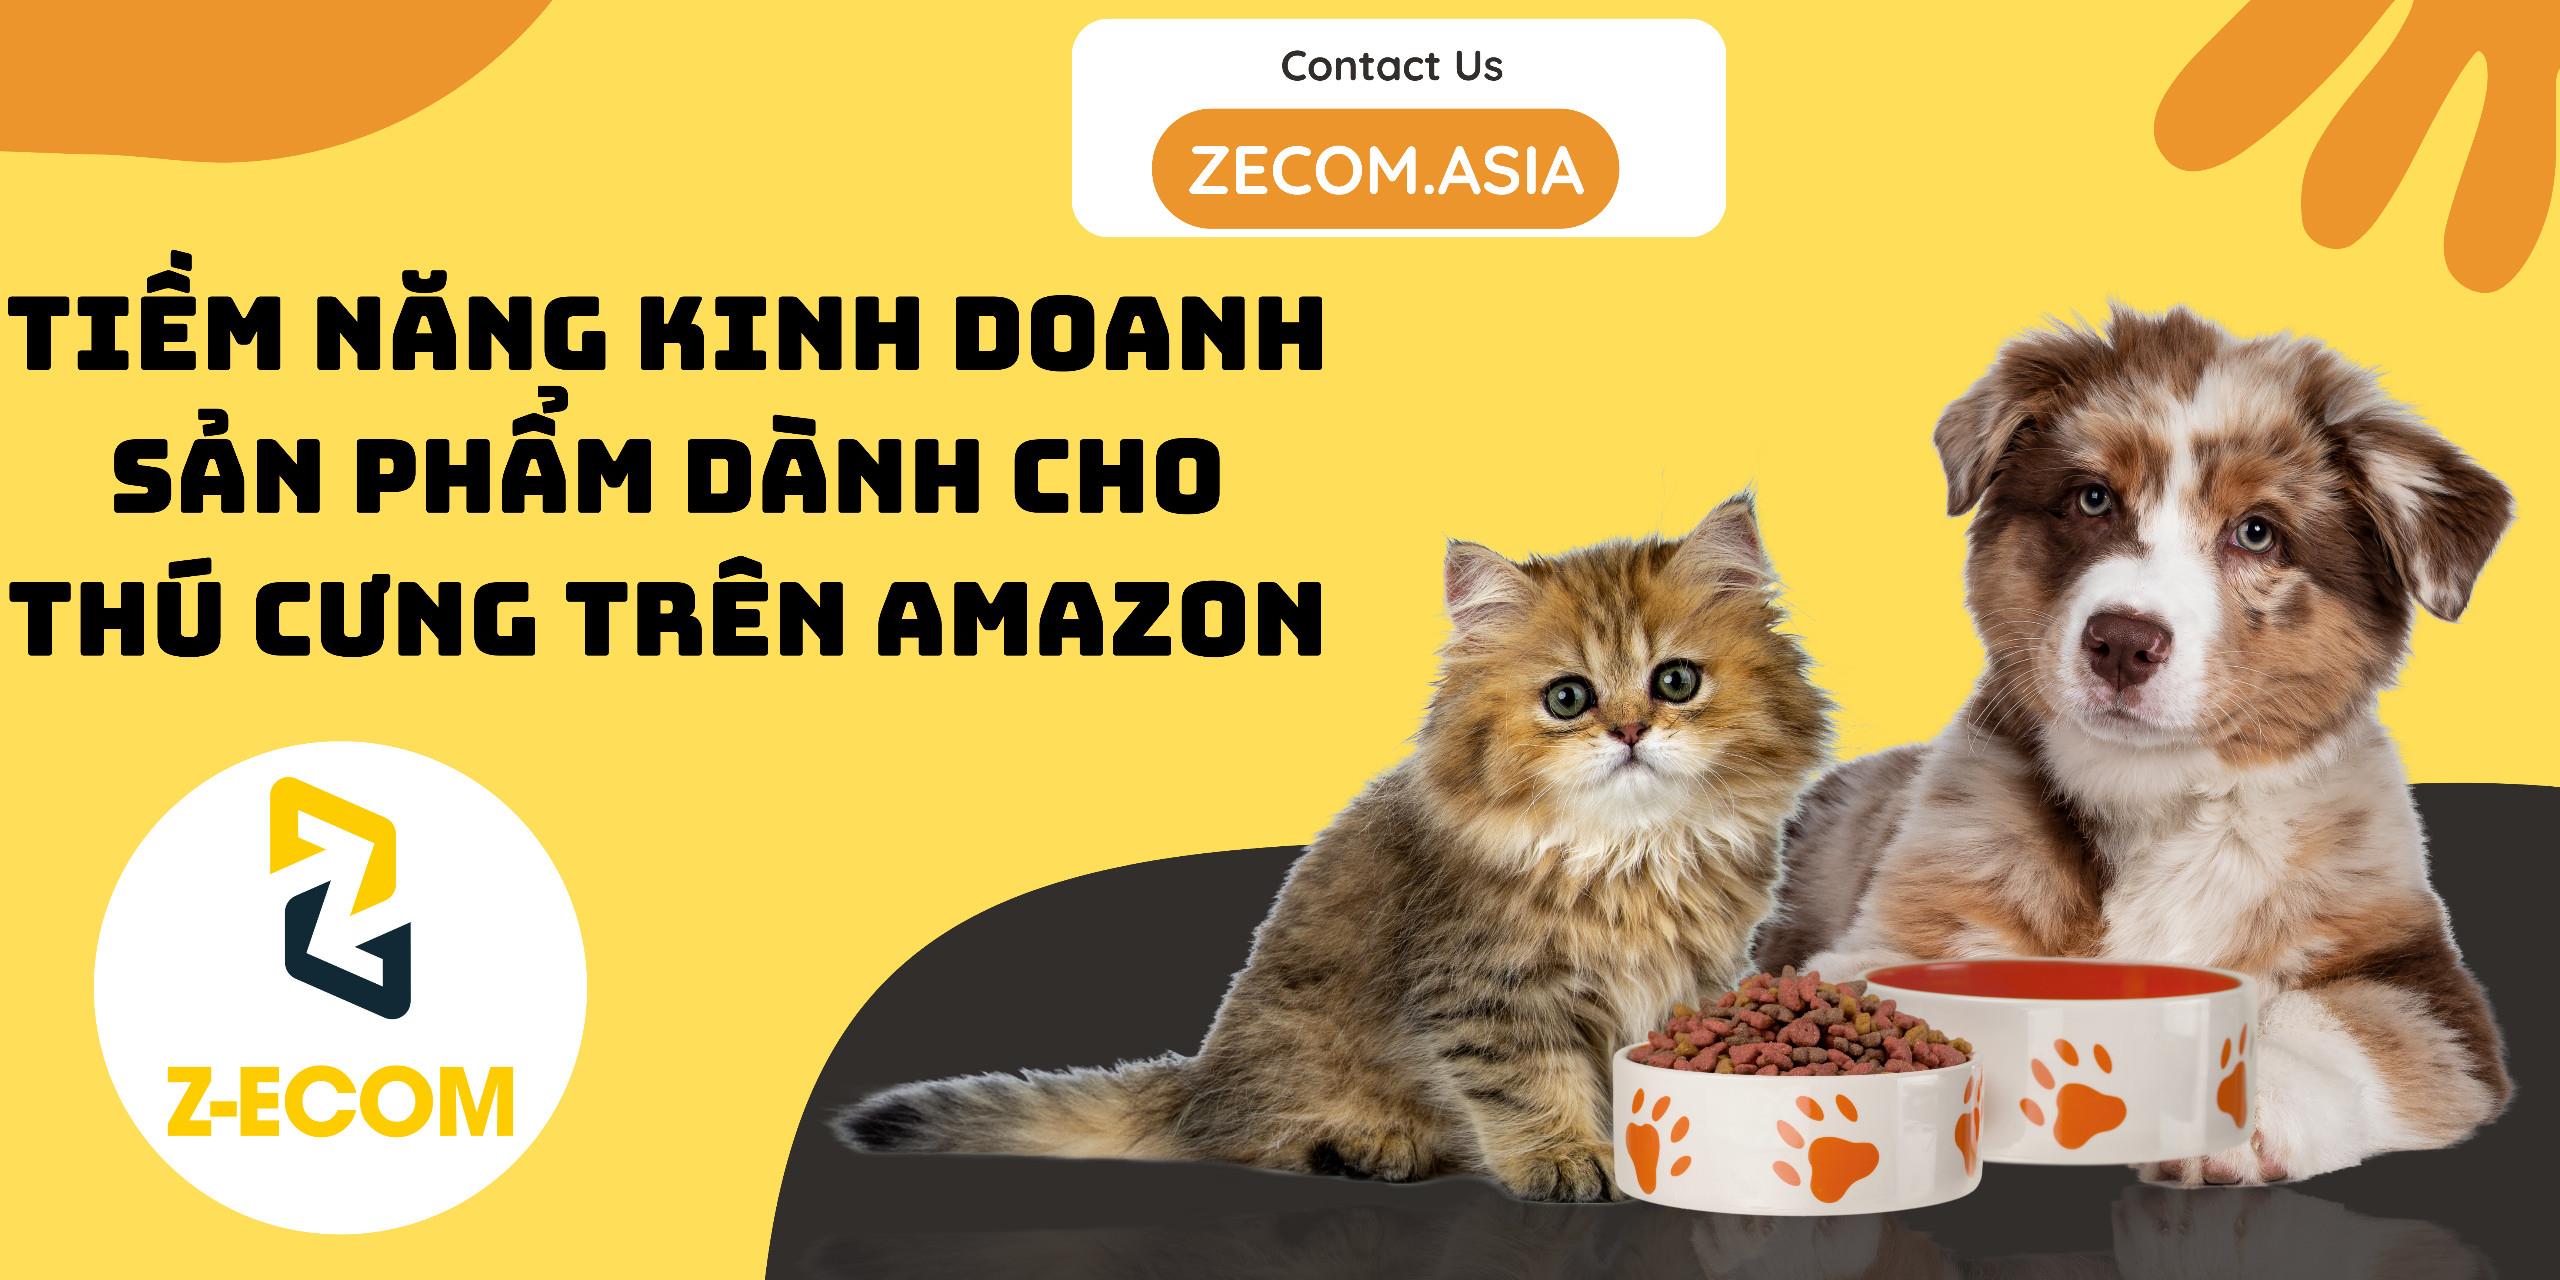 Tiềm năng kinh doanh sản phẩm dành cho thú cưng trên Amazon